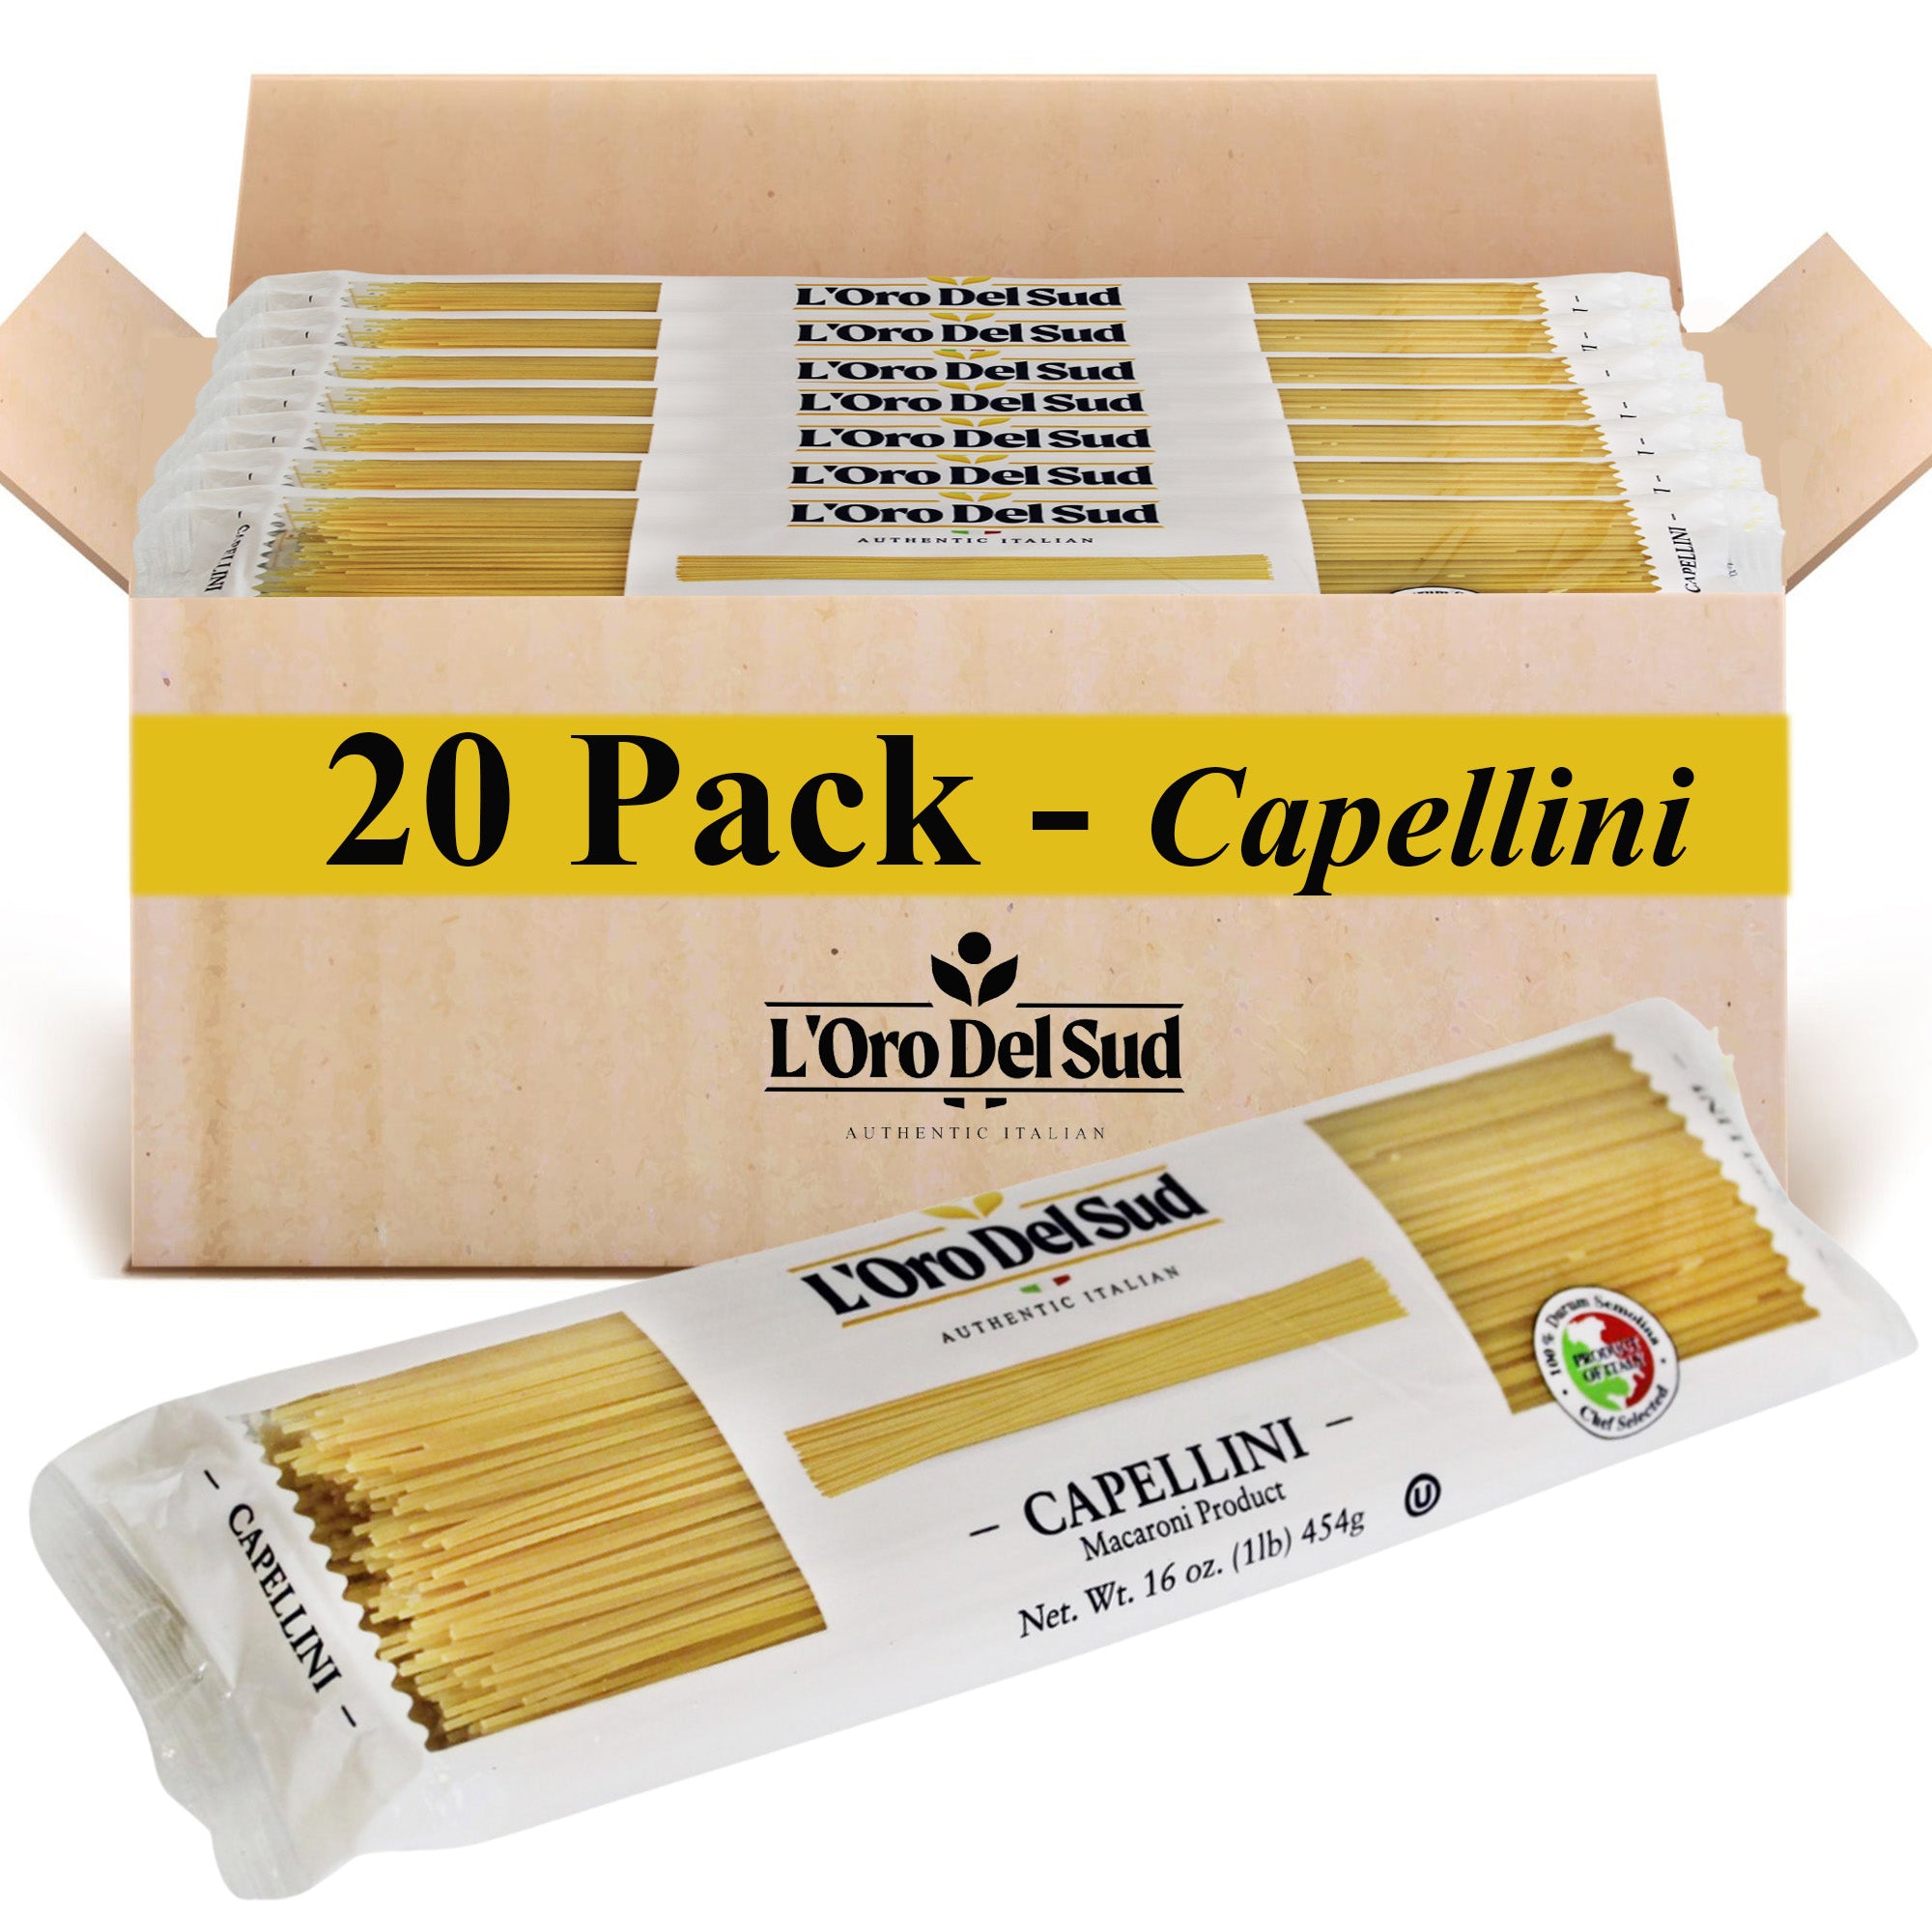 L'Oro Del Sud Capellini Pasta 1 lb. Bag